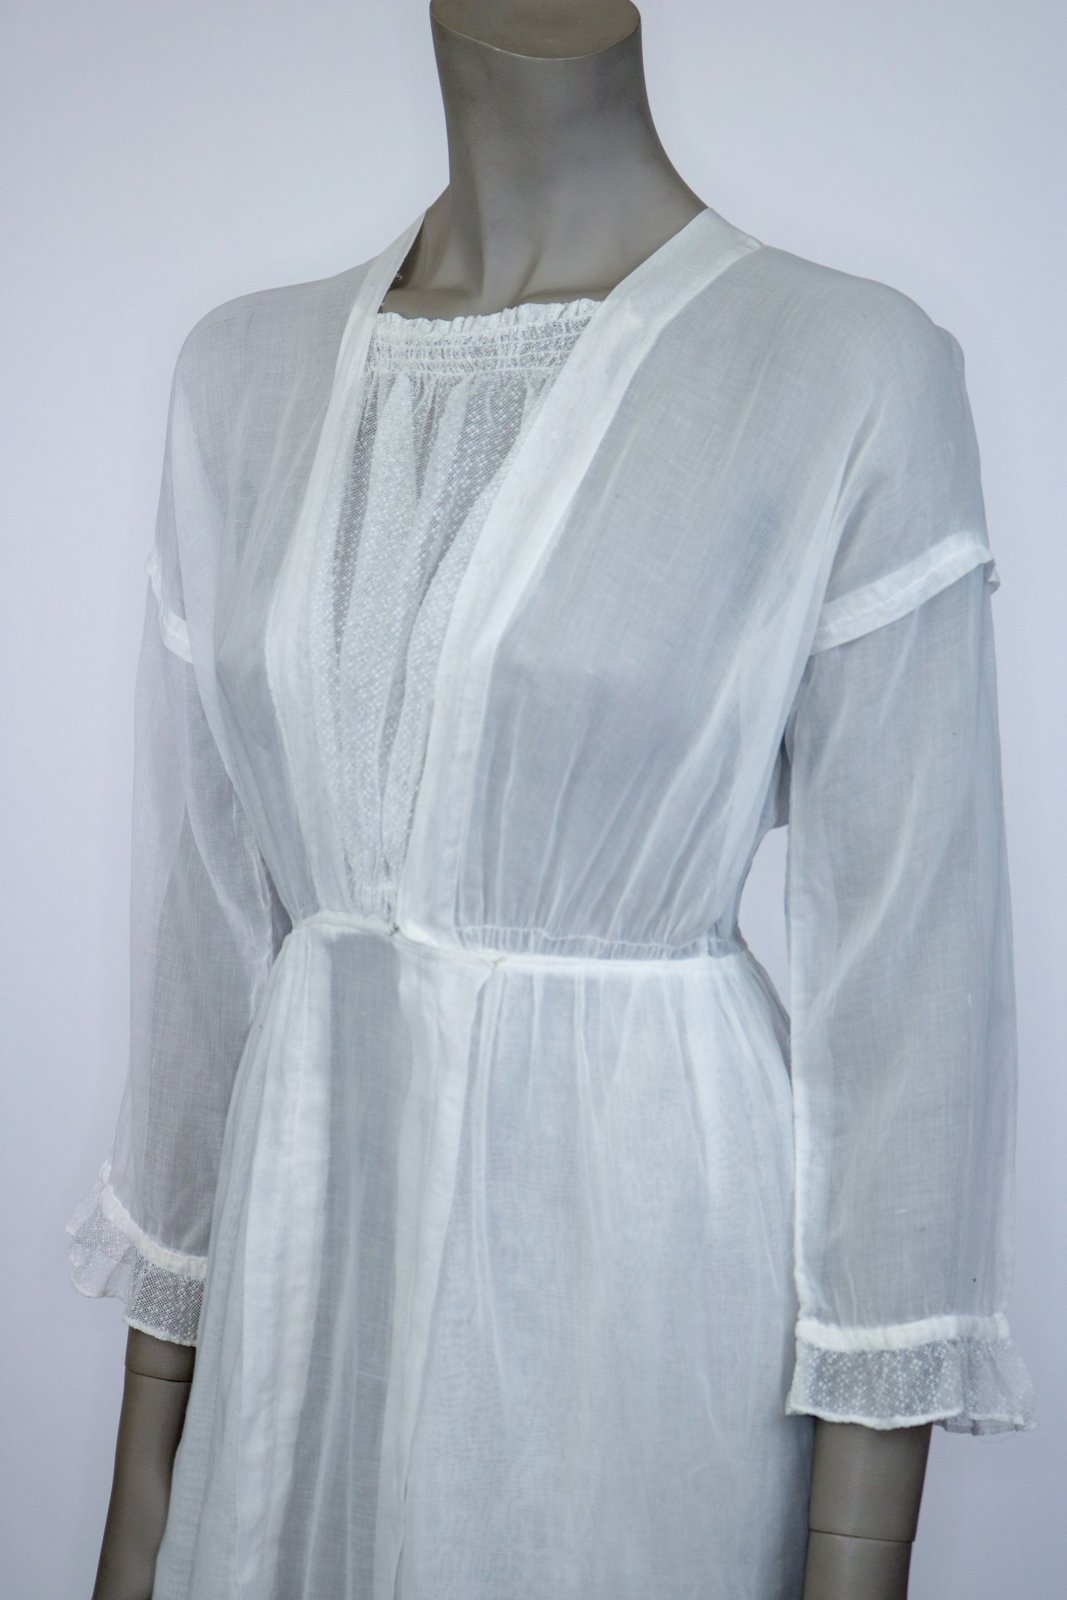 1910s Edwardian Net Lace Lawn Dress - Floria Vintage